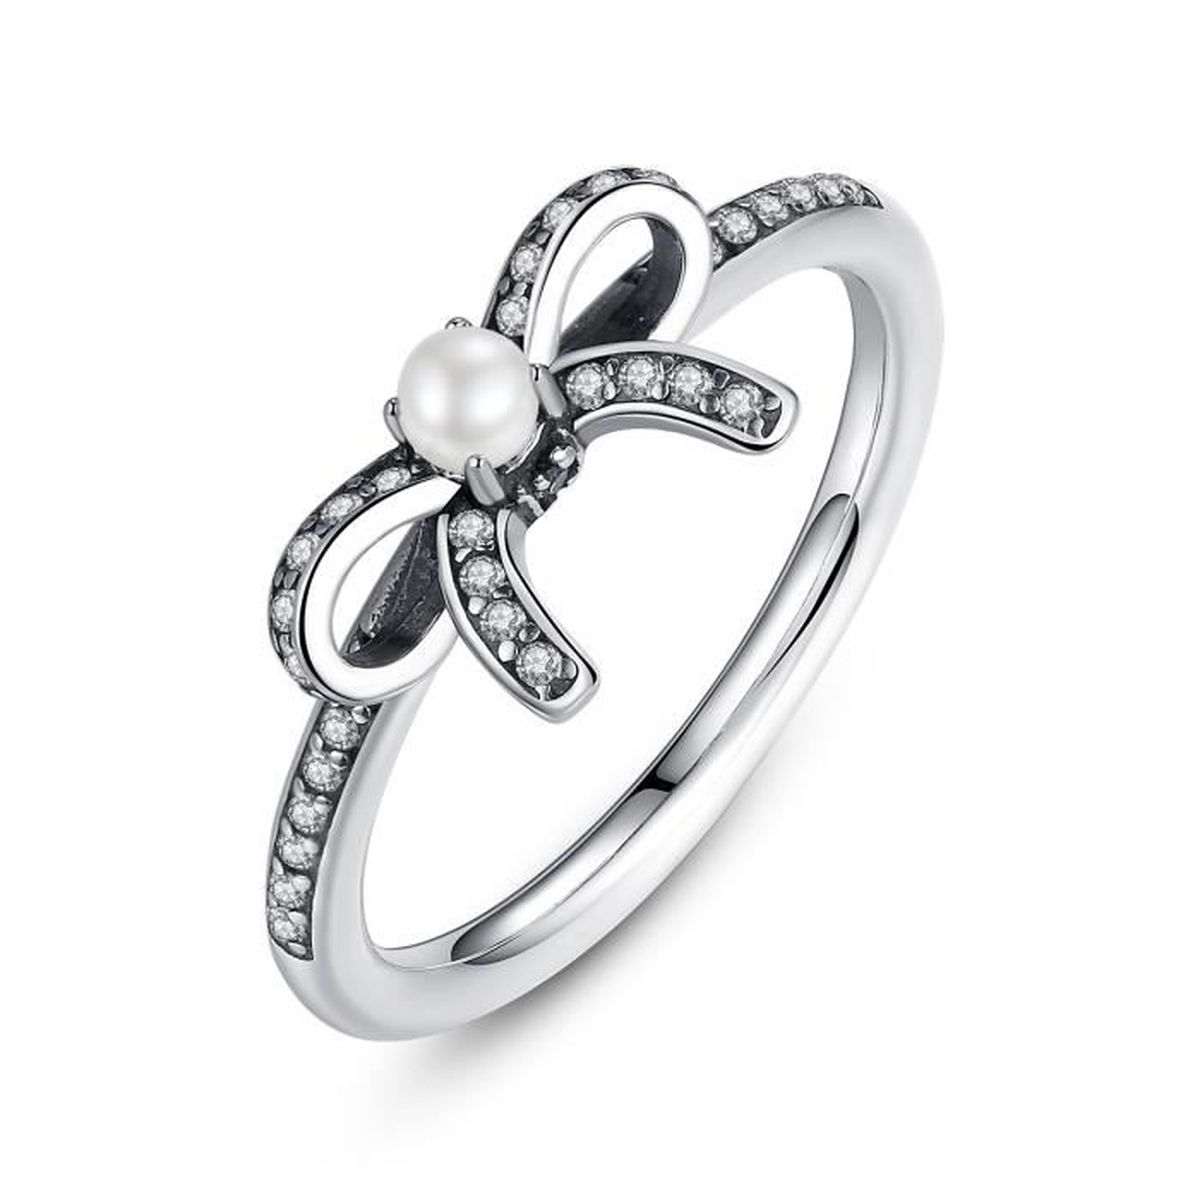 E-shop Linda's Jewelry Strieborný prsteň Mašľa s perlou Ag 925/1000 IPR014-8